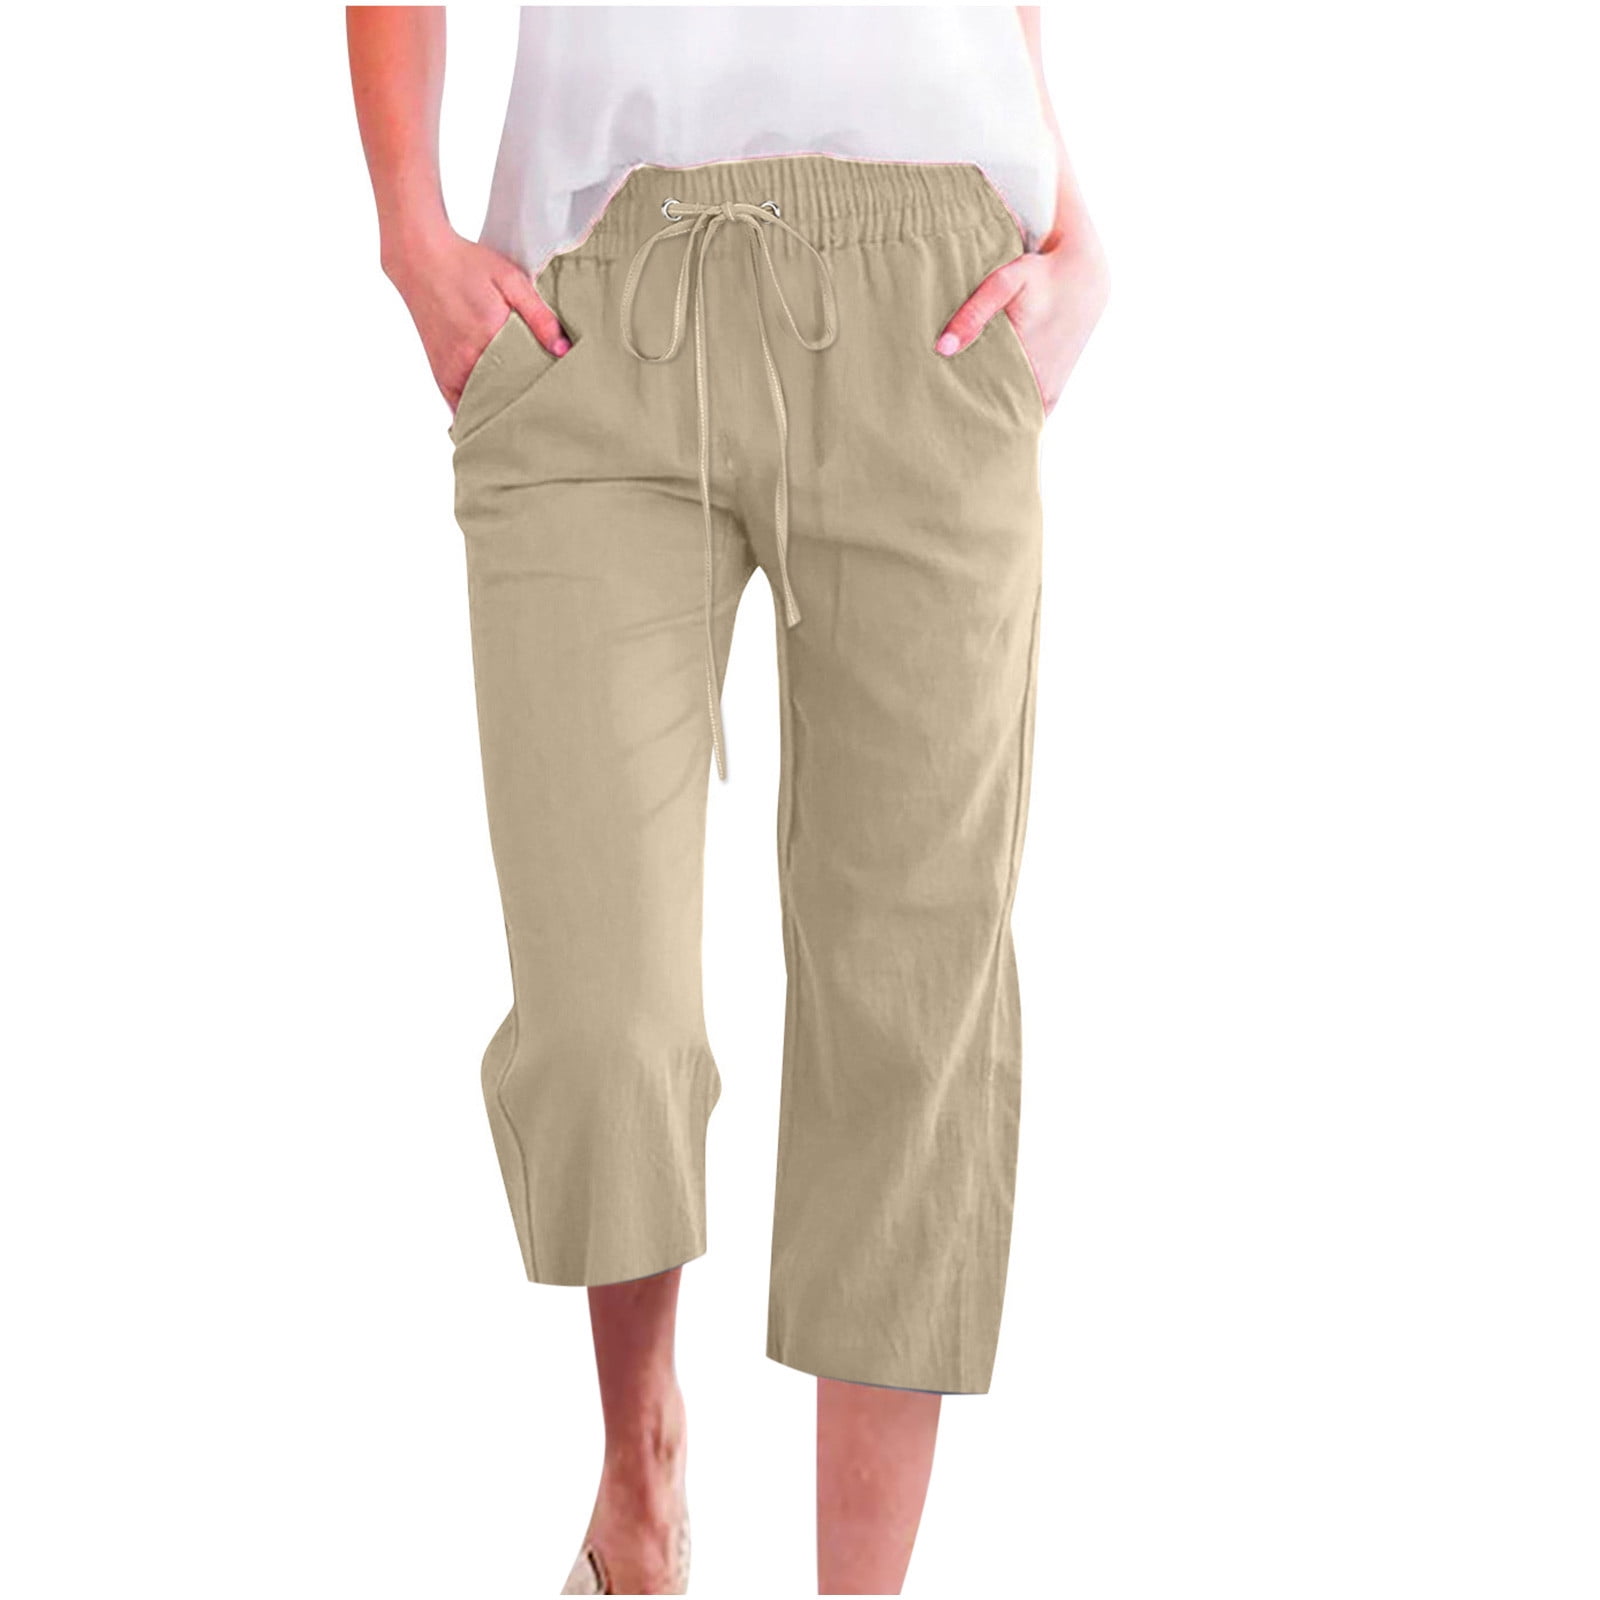 Bottom Shorts Wide Leg Pants Linen Pants Women High Waist 3/4 Length Solid